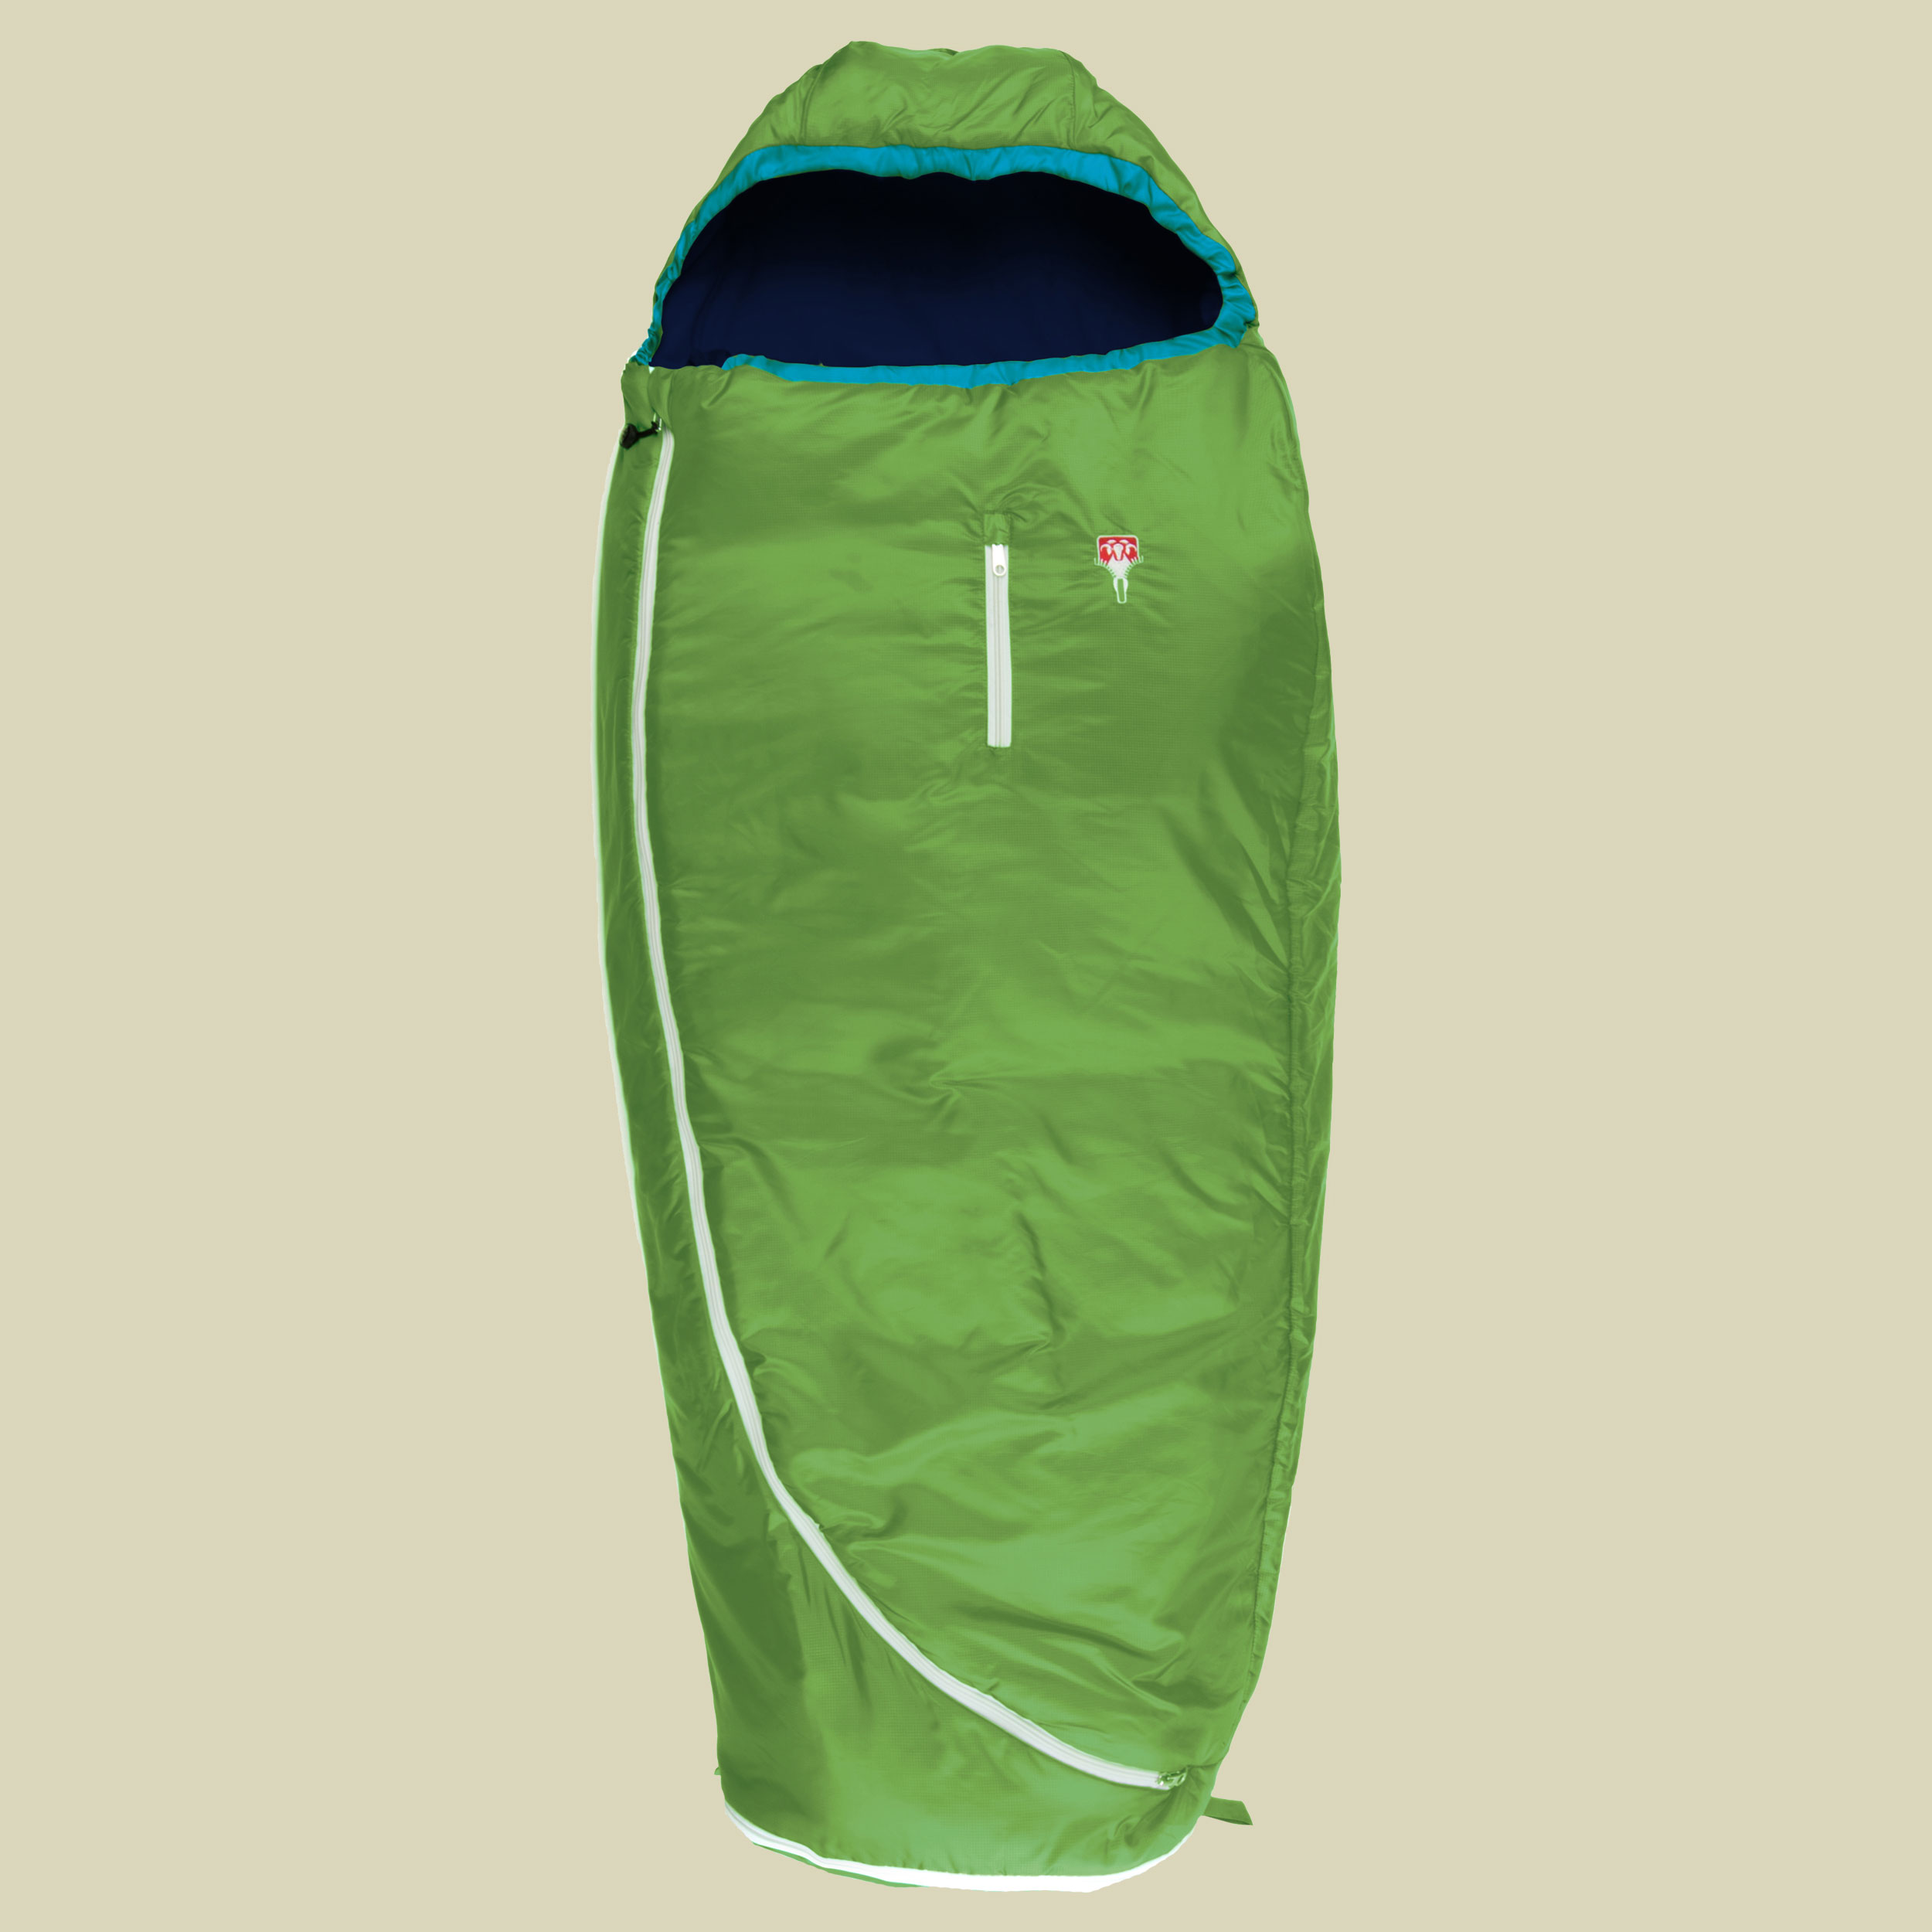 Biopod Wolle Kids World Traveller bis Körpergröße Schlafsack 100-155 cm cm Farbe holly green